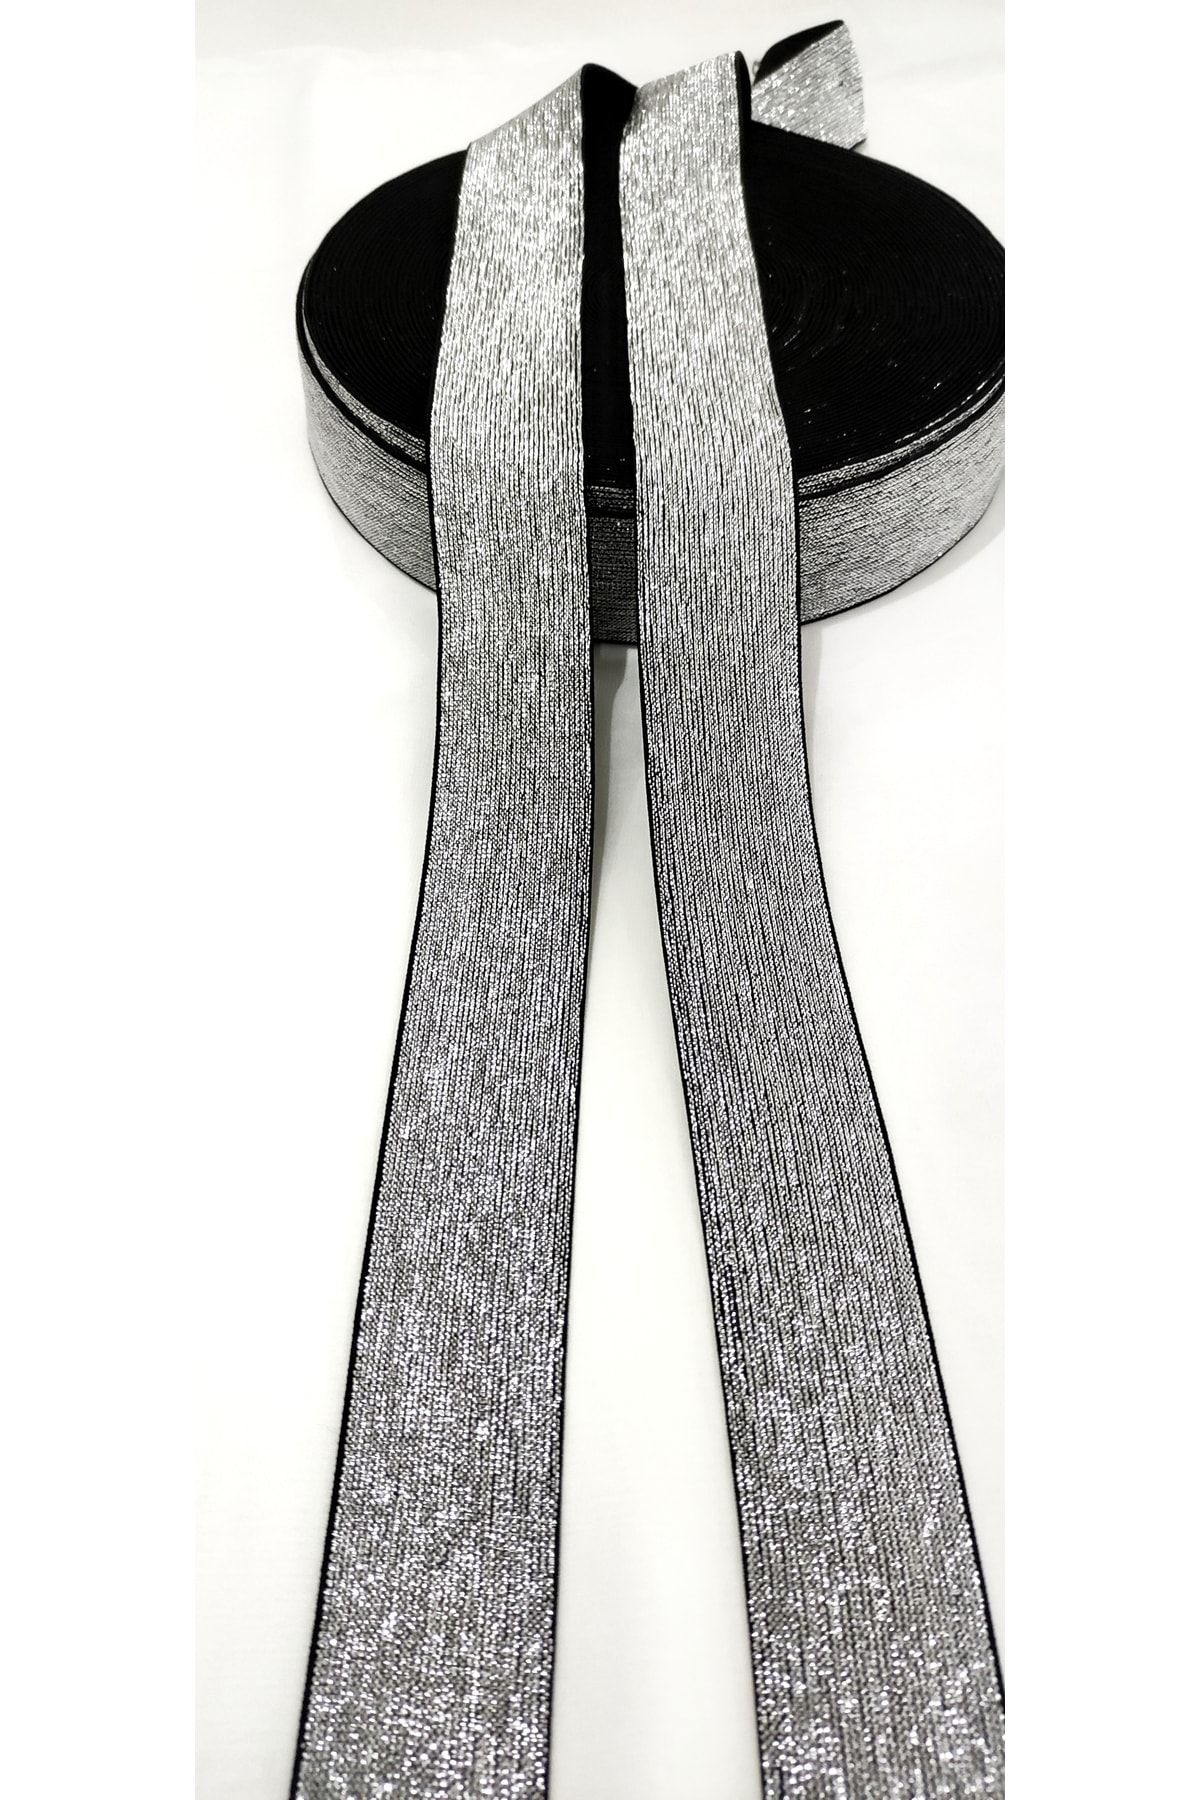 Genel Markalar 4cm Genişlikte Düz Gümüş Simli Lastik Şerit / 1 Metre